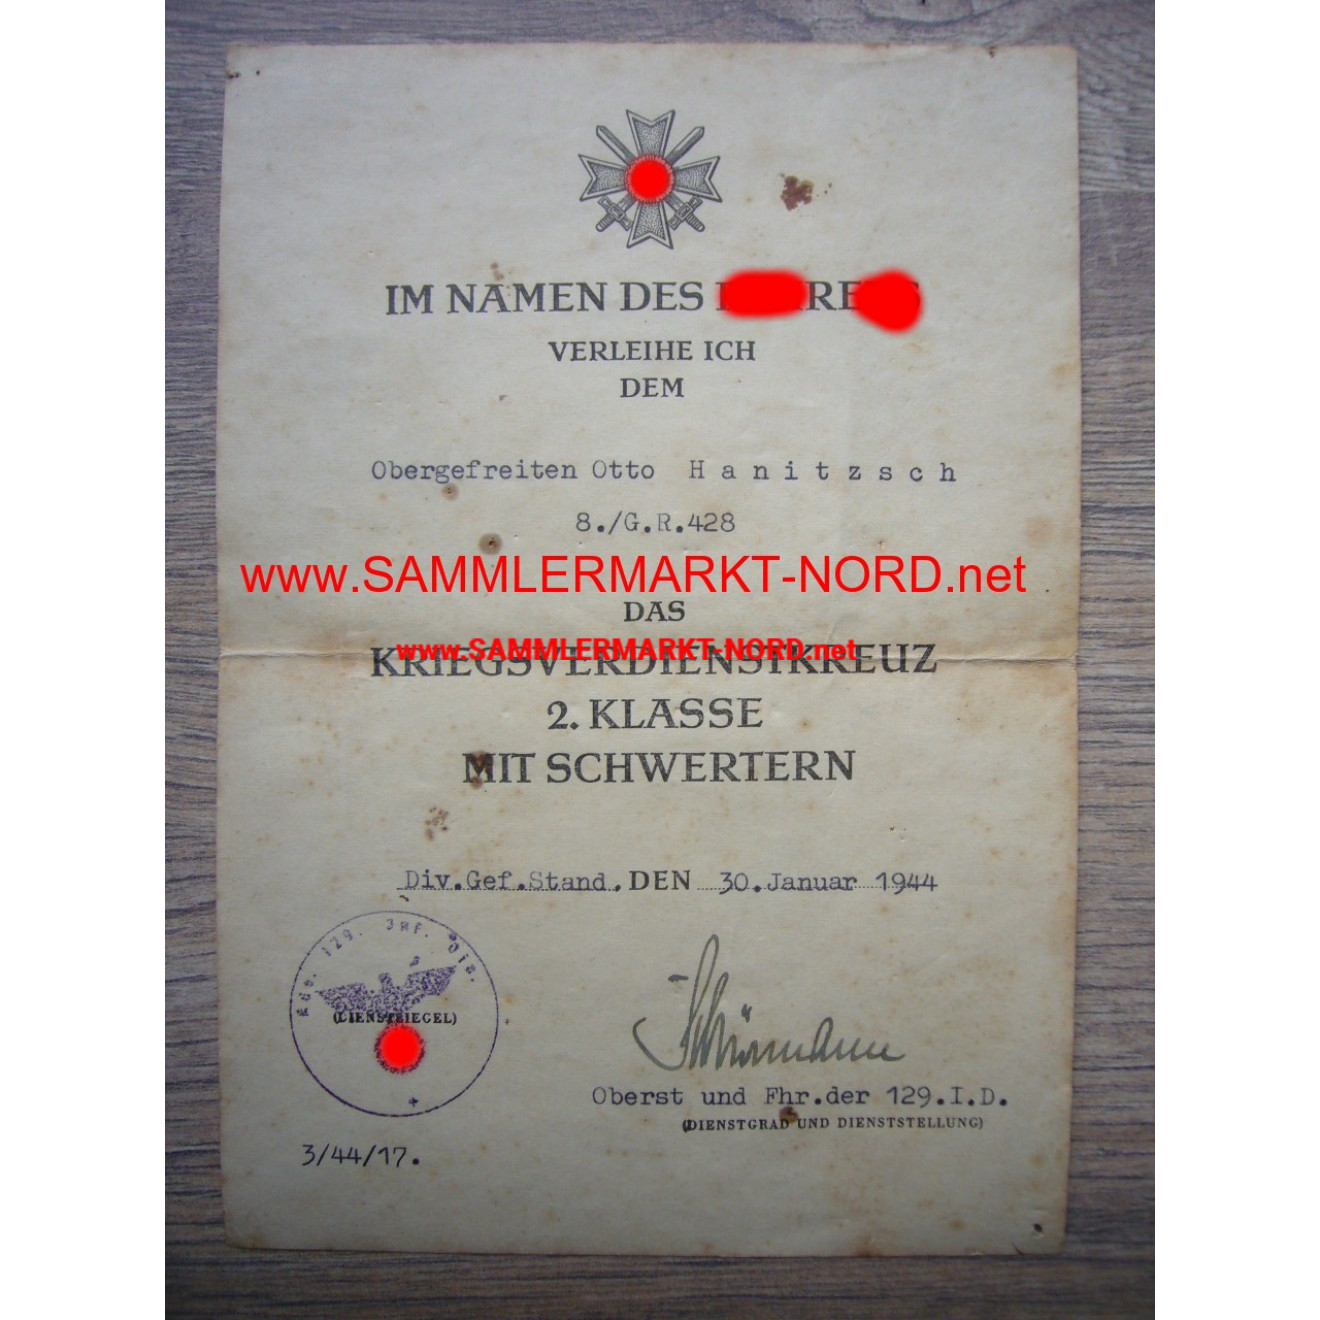 KVK certificate 129.I.D. - OBERST SCHIEMANN - Autograph